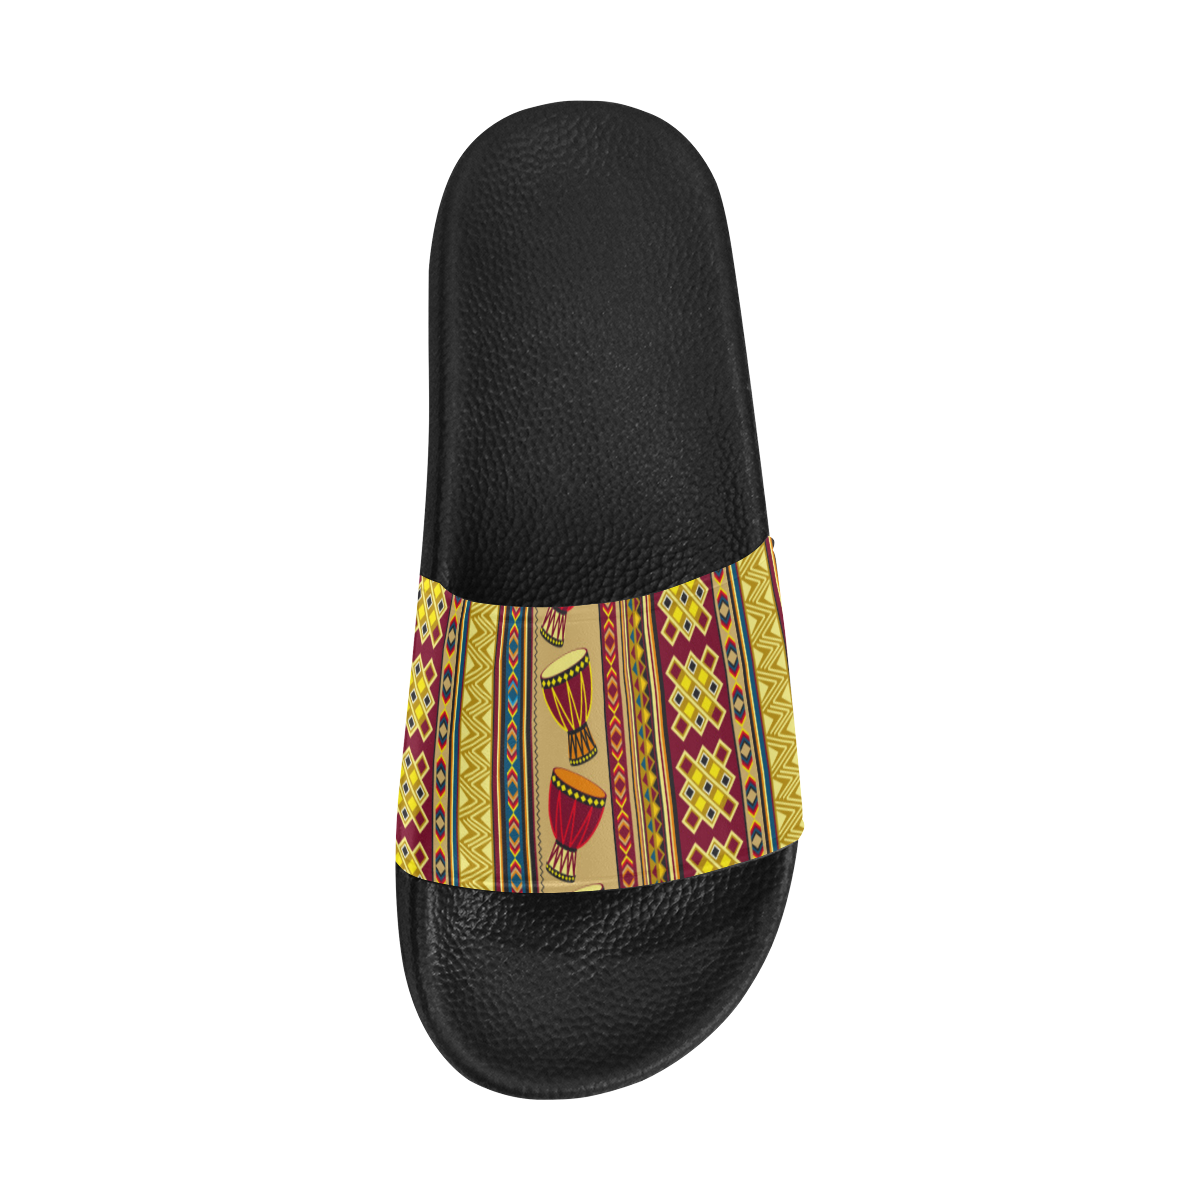 Traditional Africa Border Wallpaper Pattern 4 Women's Slide Sandals (Model 057)